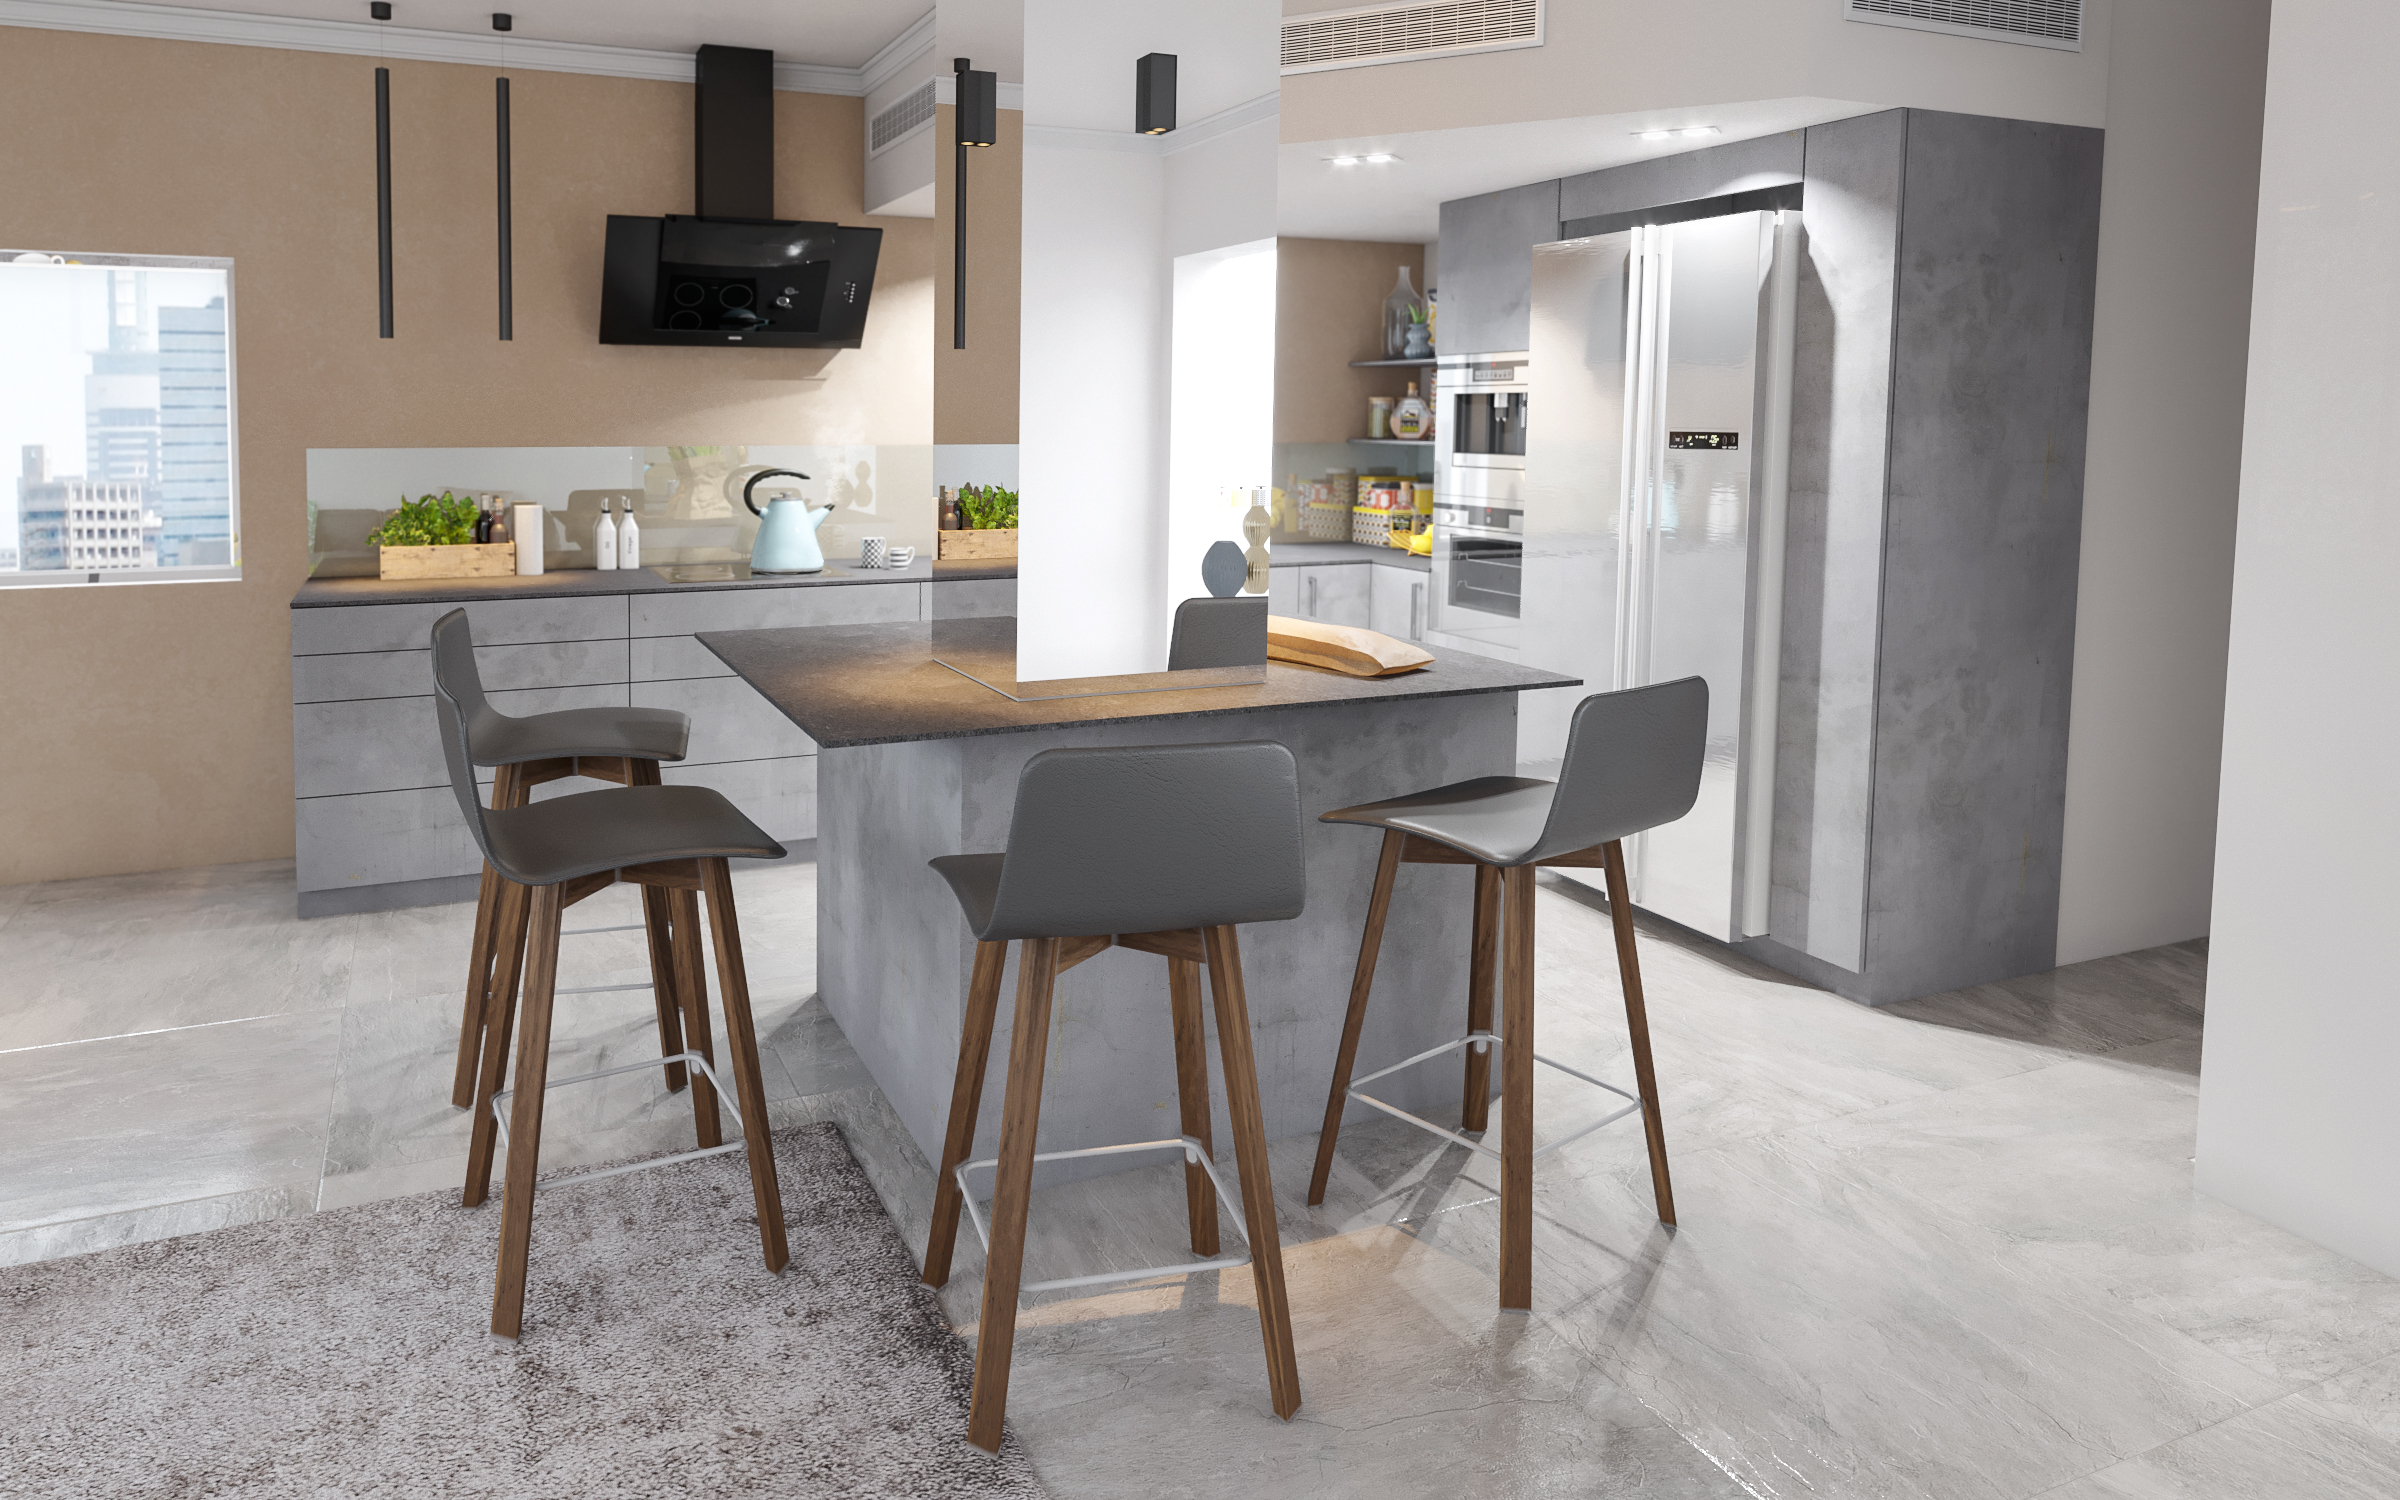 Cozinha moderna em 3d max corona render imagem